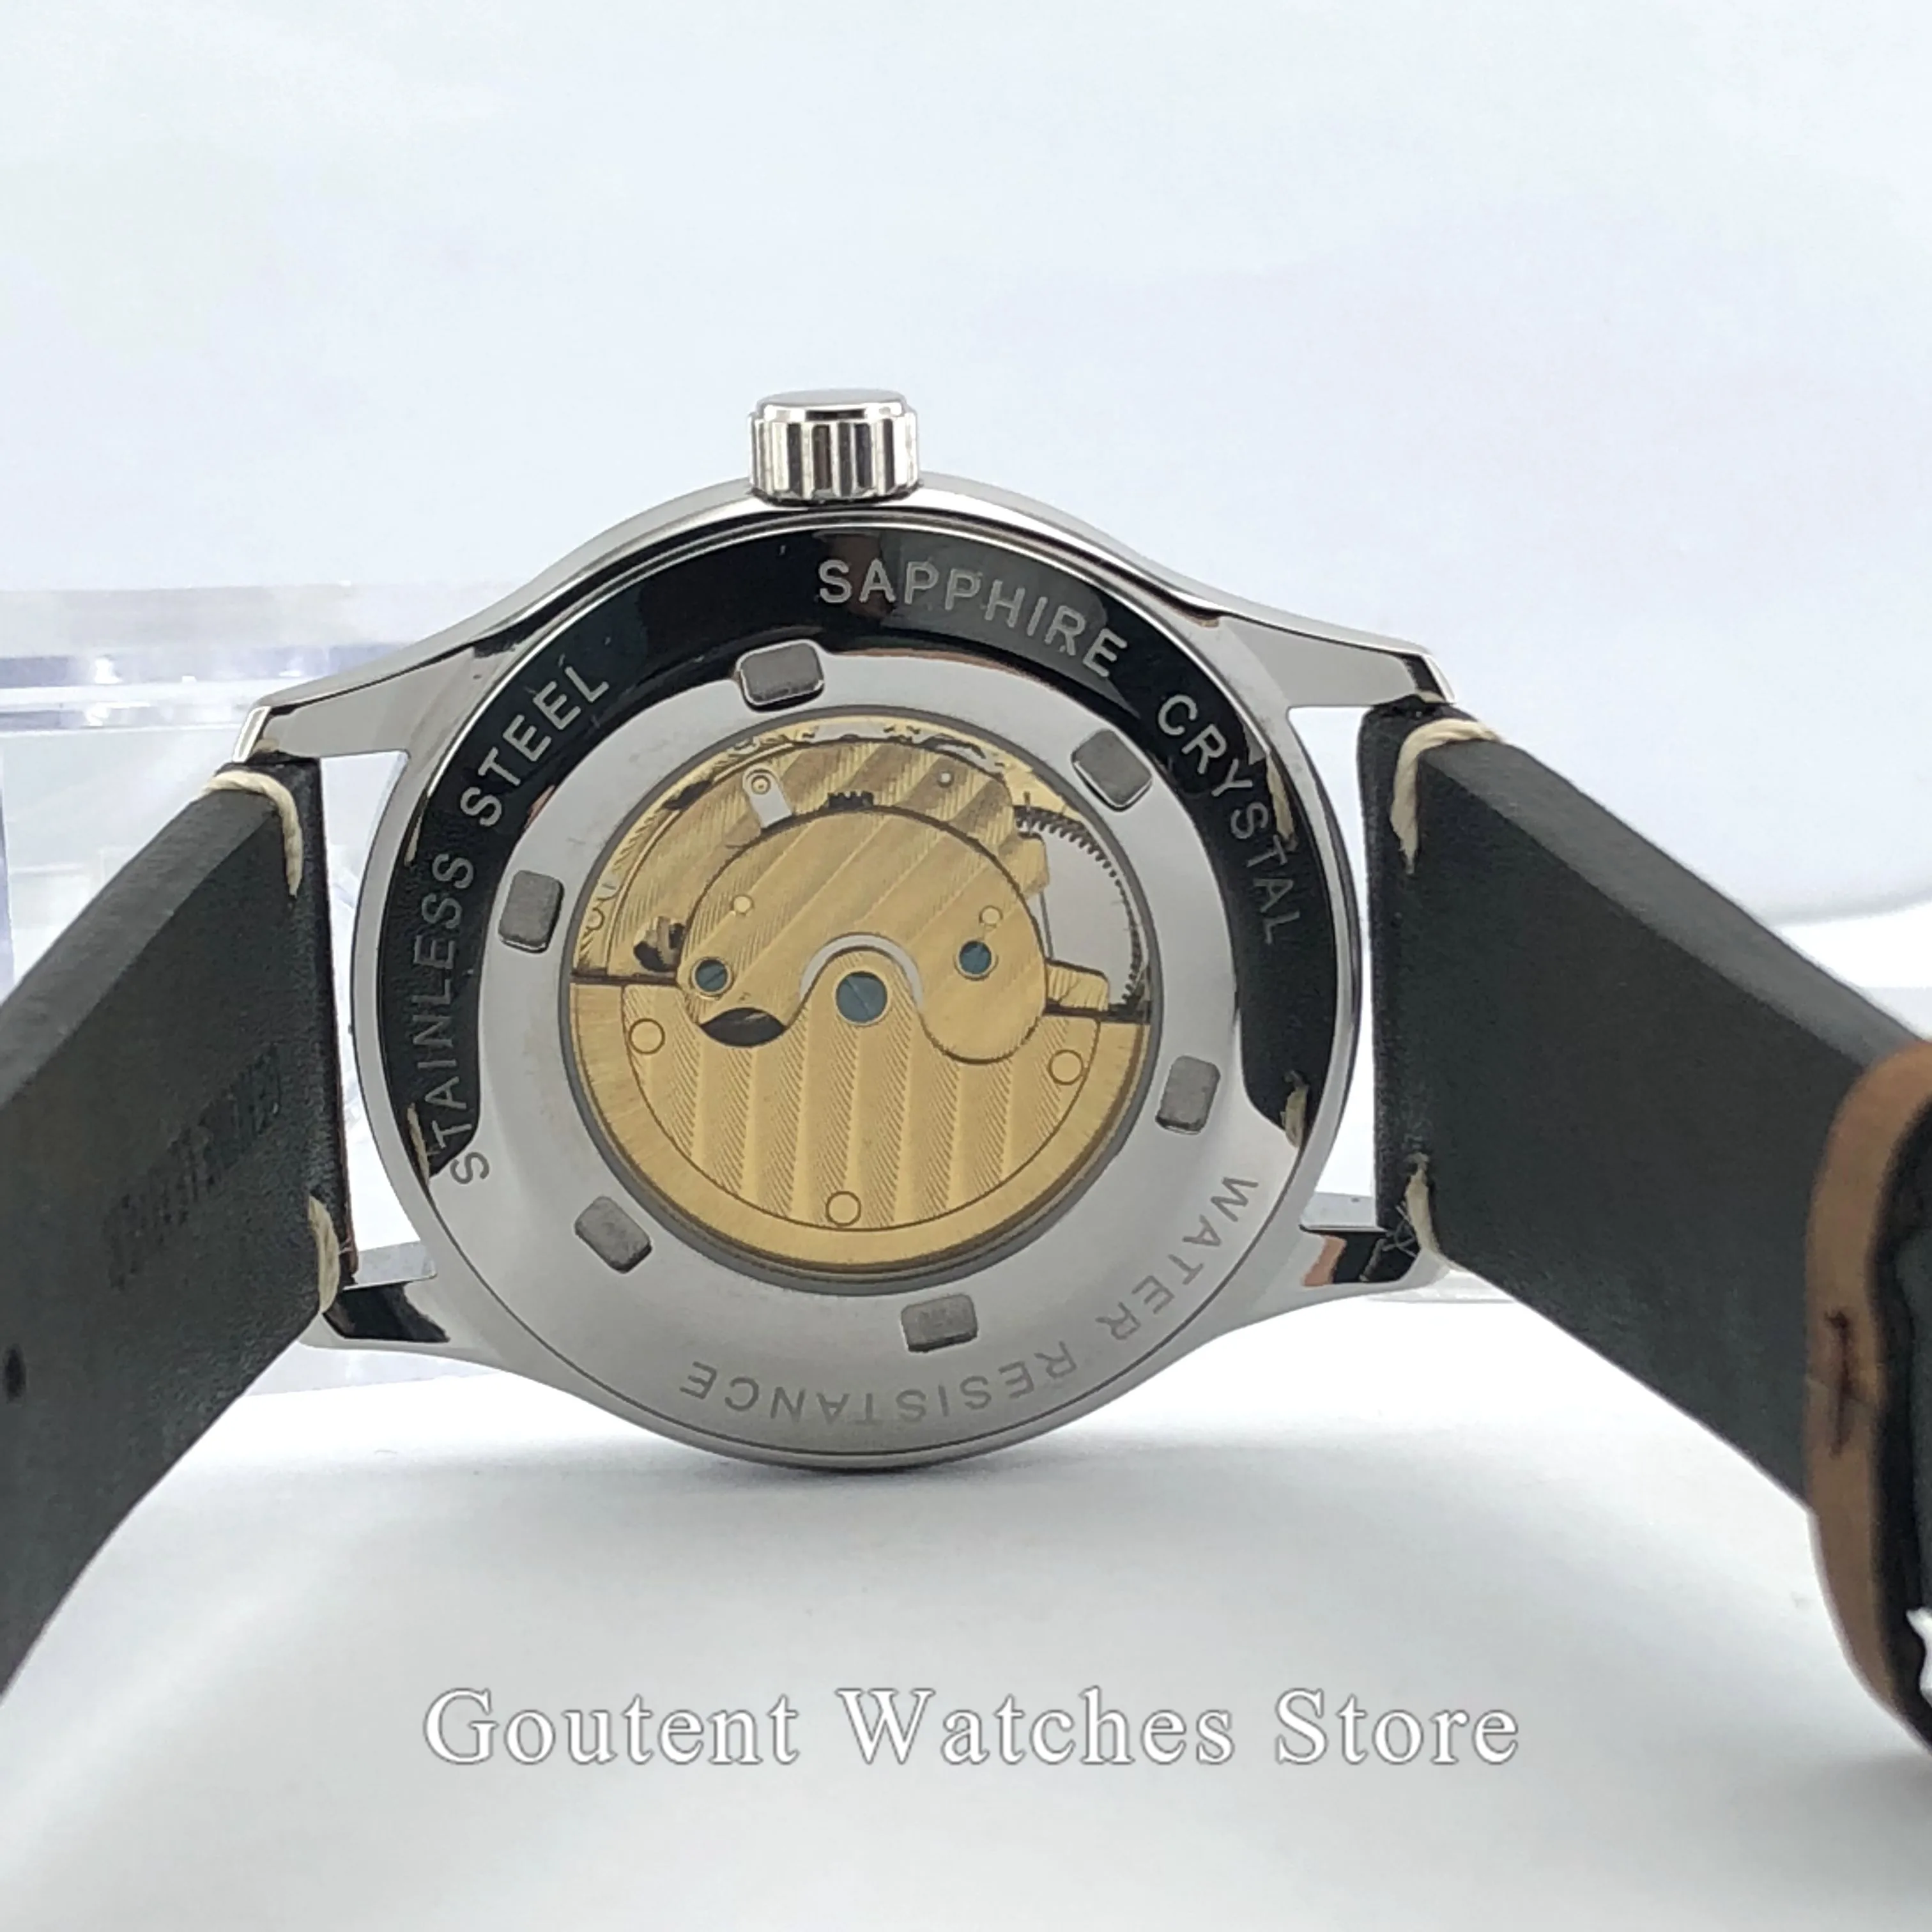 42 мм Corgeut черный стерильный циферблат сапфировое стекло кожаный ремешок автоматические мужские часы Y